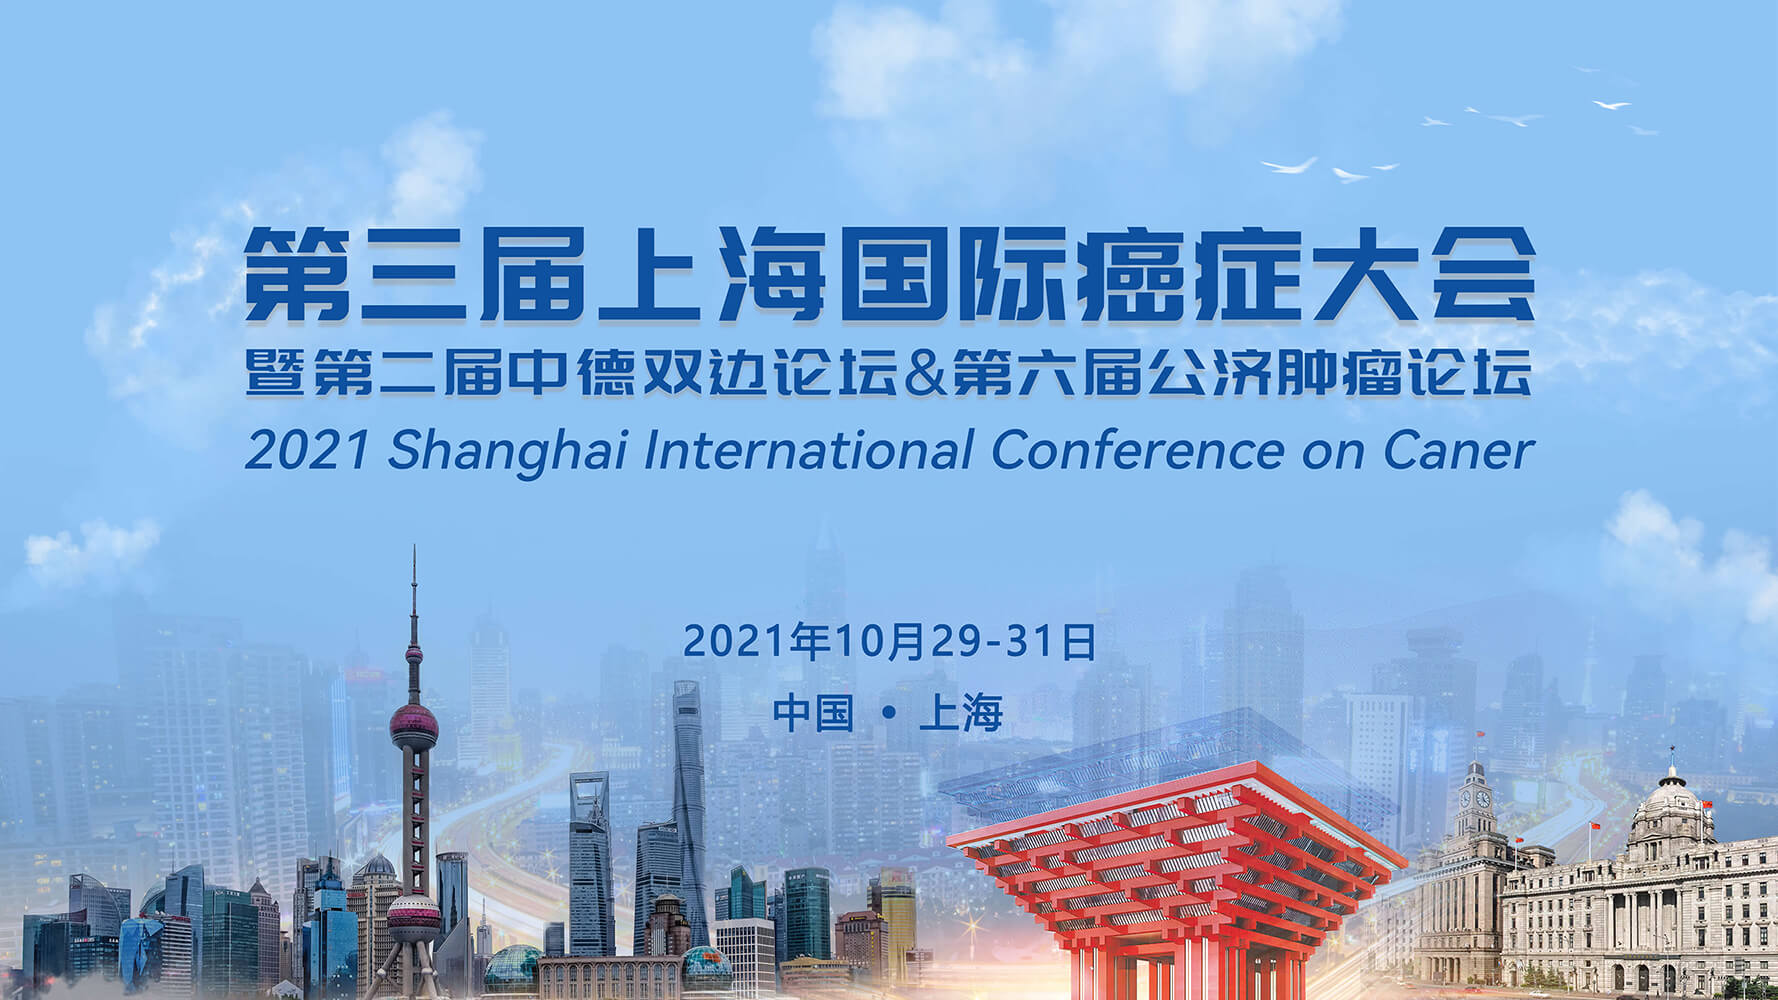 会议通知 | IsoPlexis邀您共赴第三届上海国际癌症大会